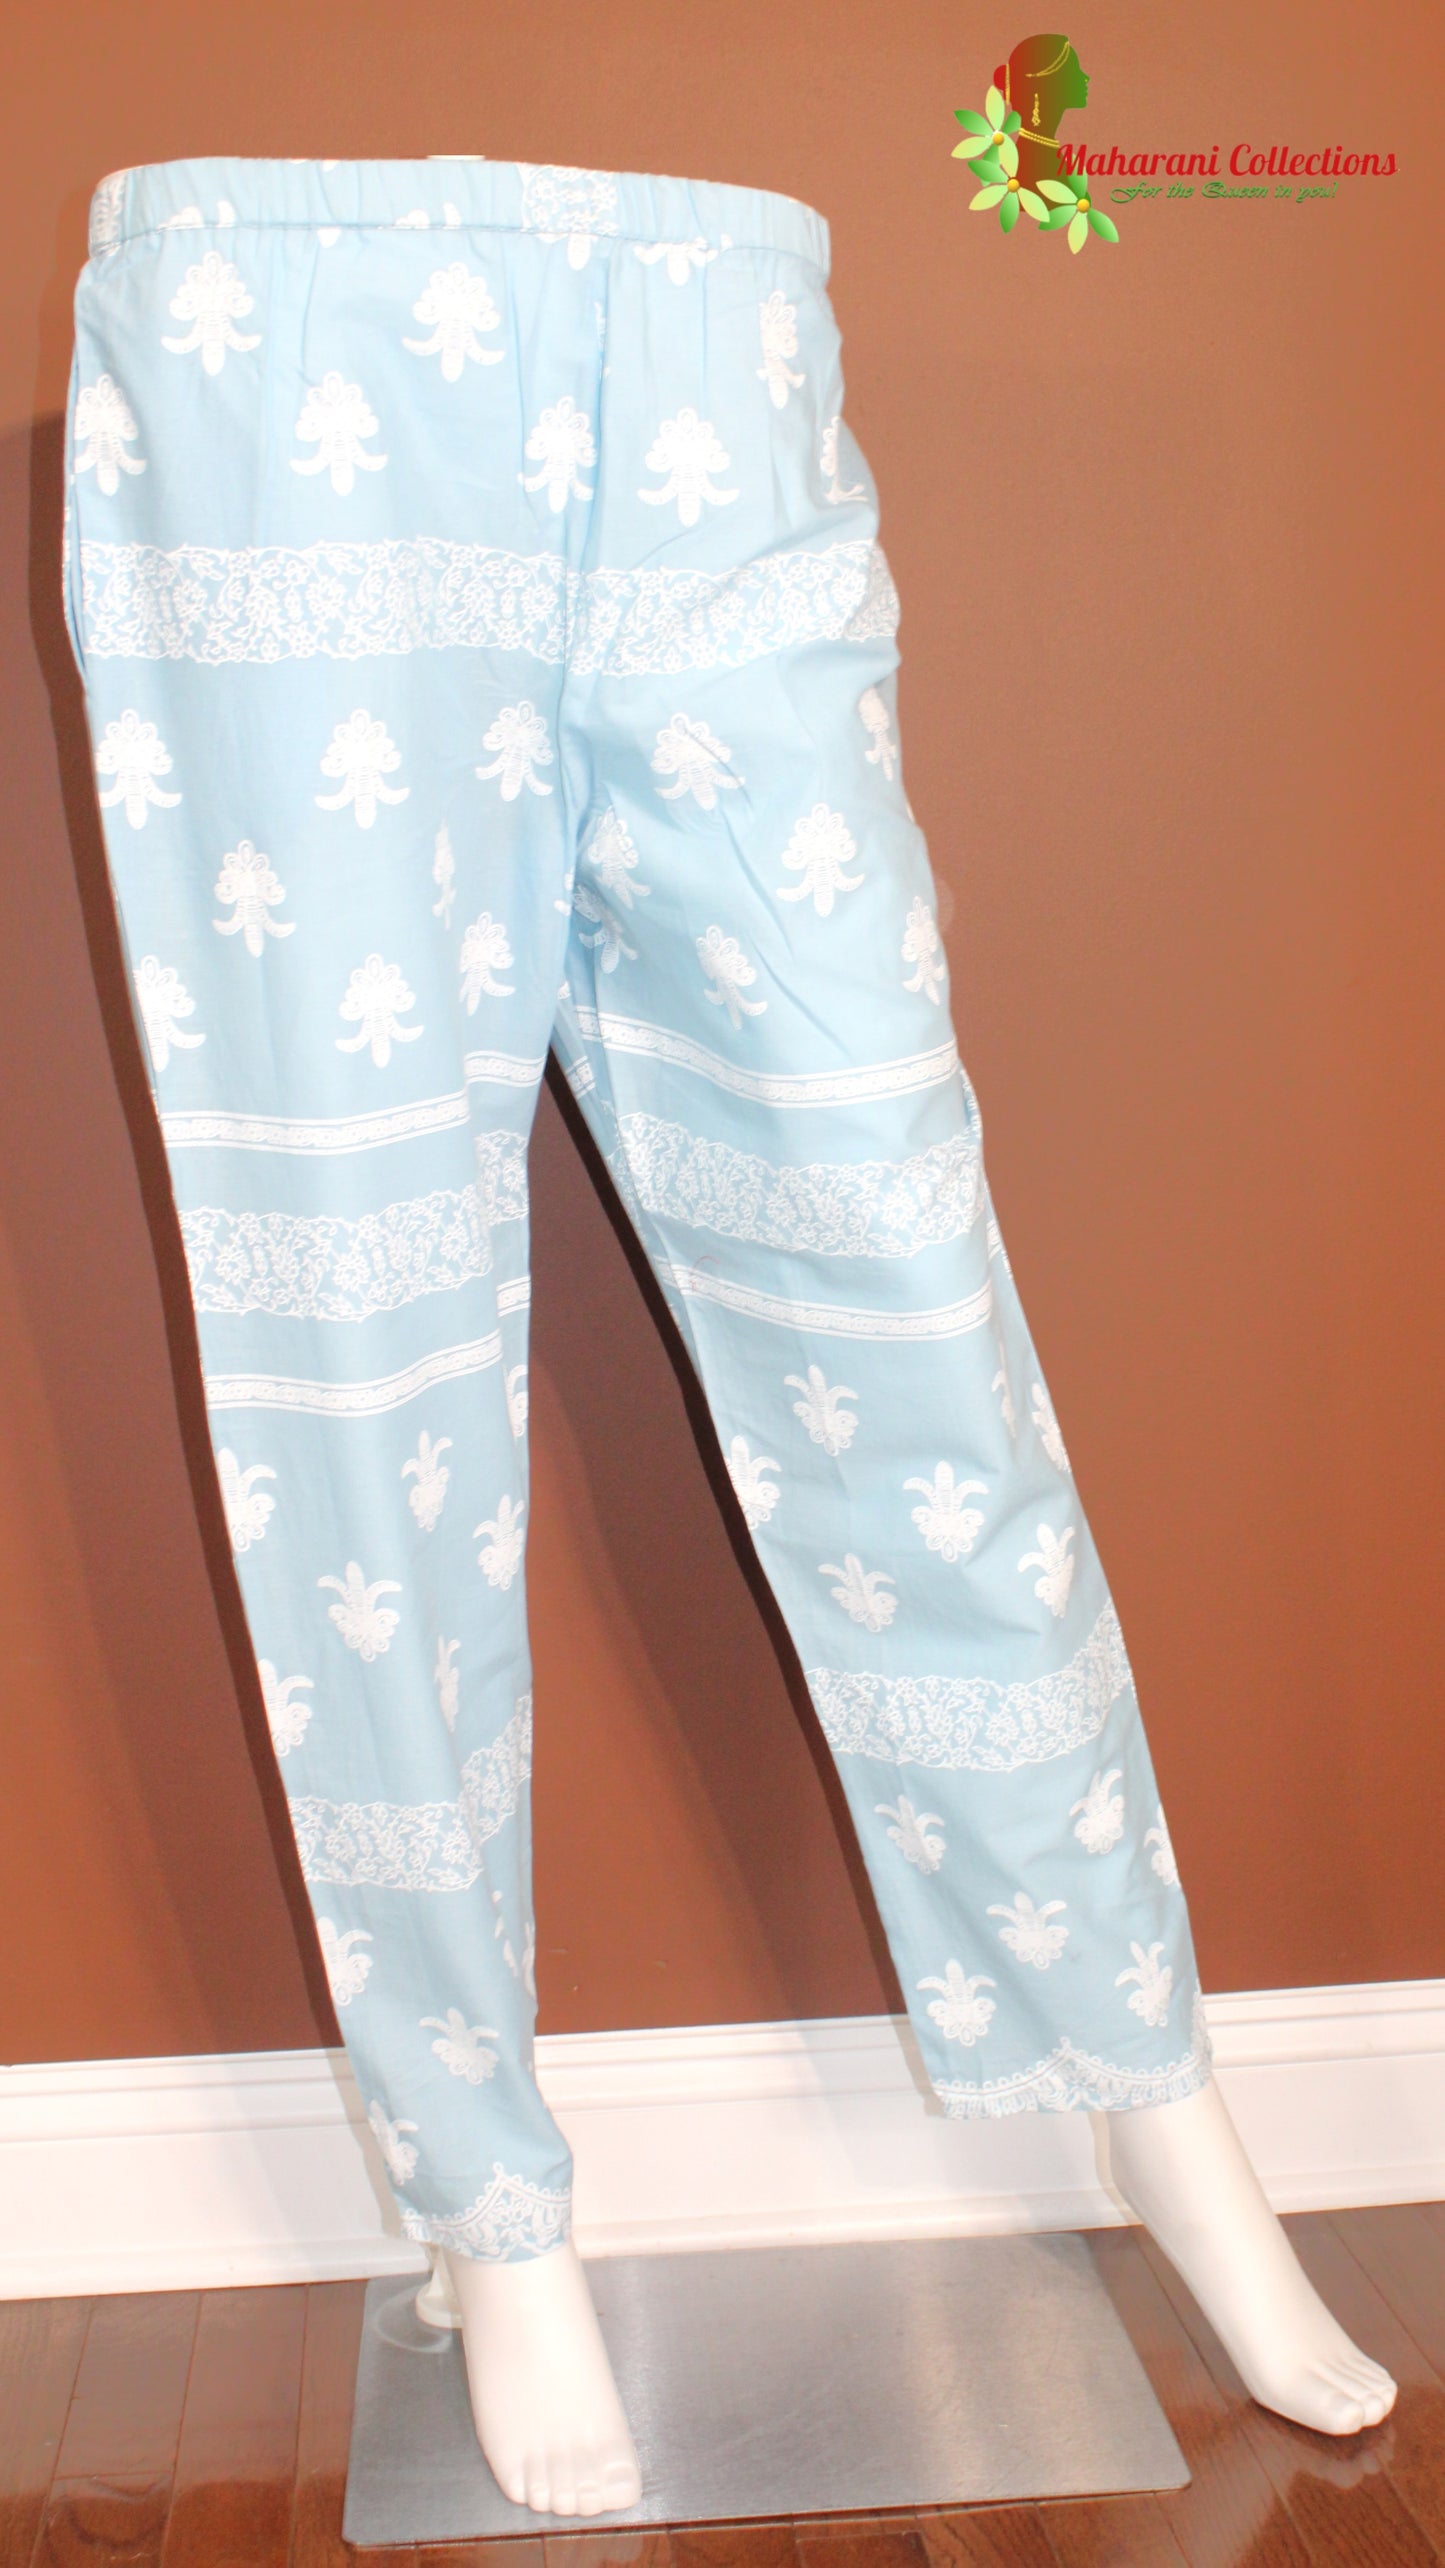 Maharani's Pant Suit - Cotton Silk - Sky Blue (S, M, L)